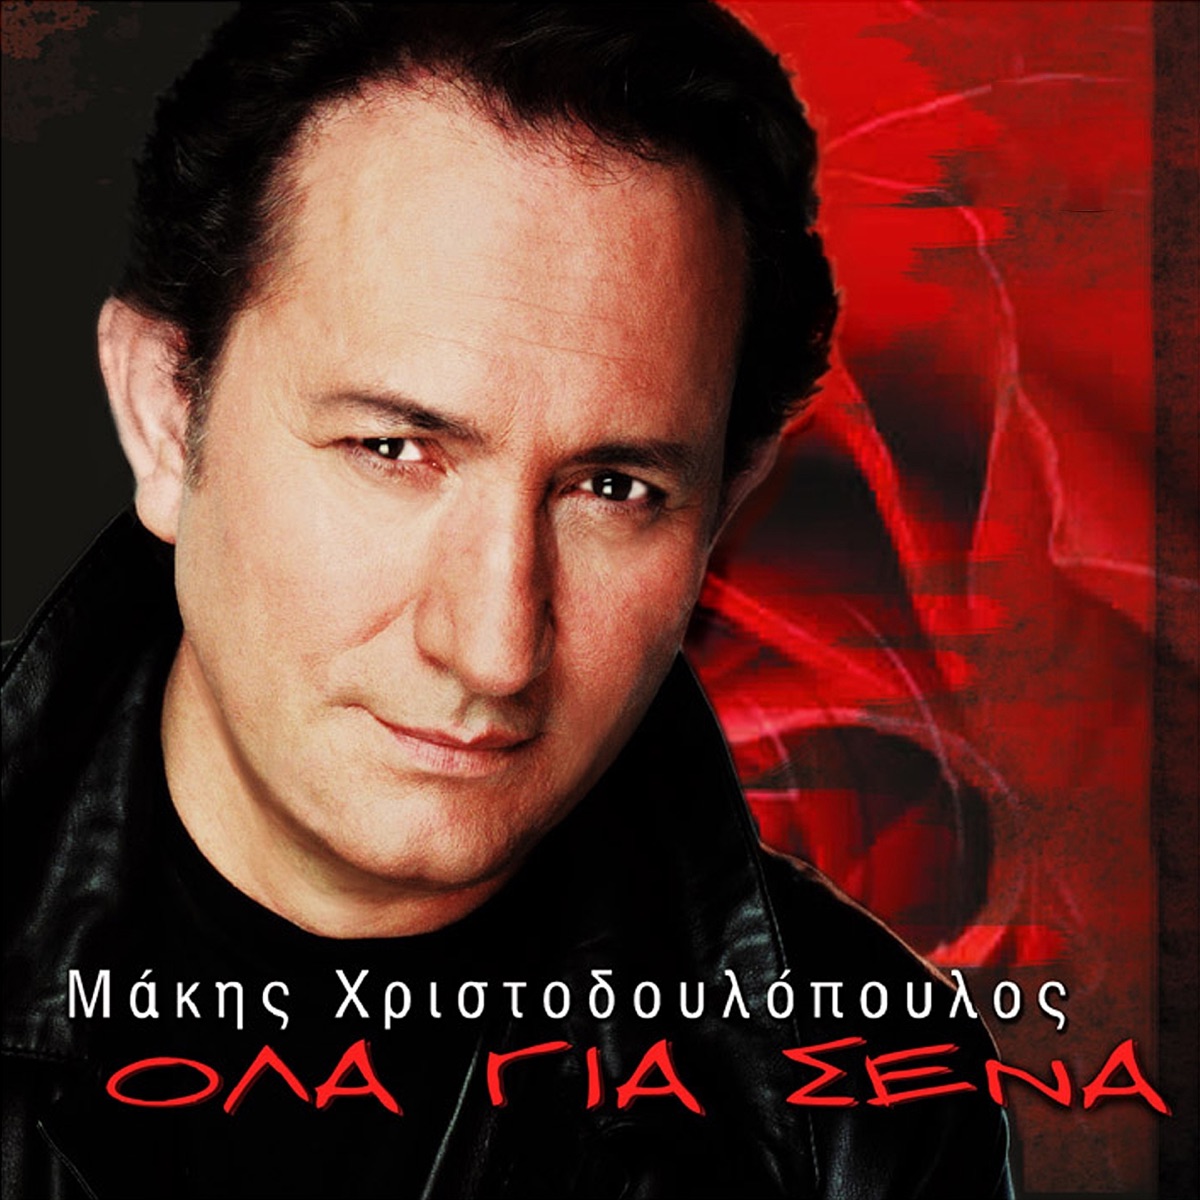 Ola Gia Sena - Άλμπουμ από Μακης Χριστοδουλοπουλος - Apple Music